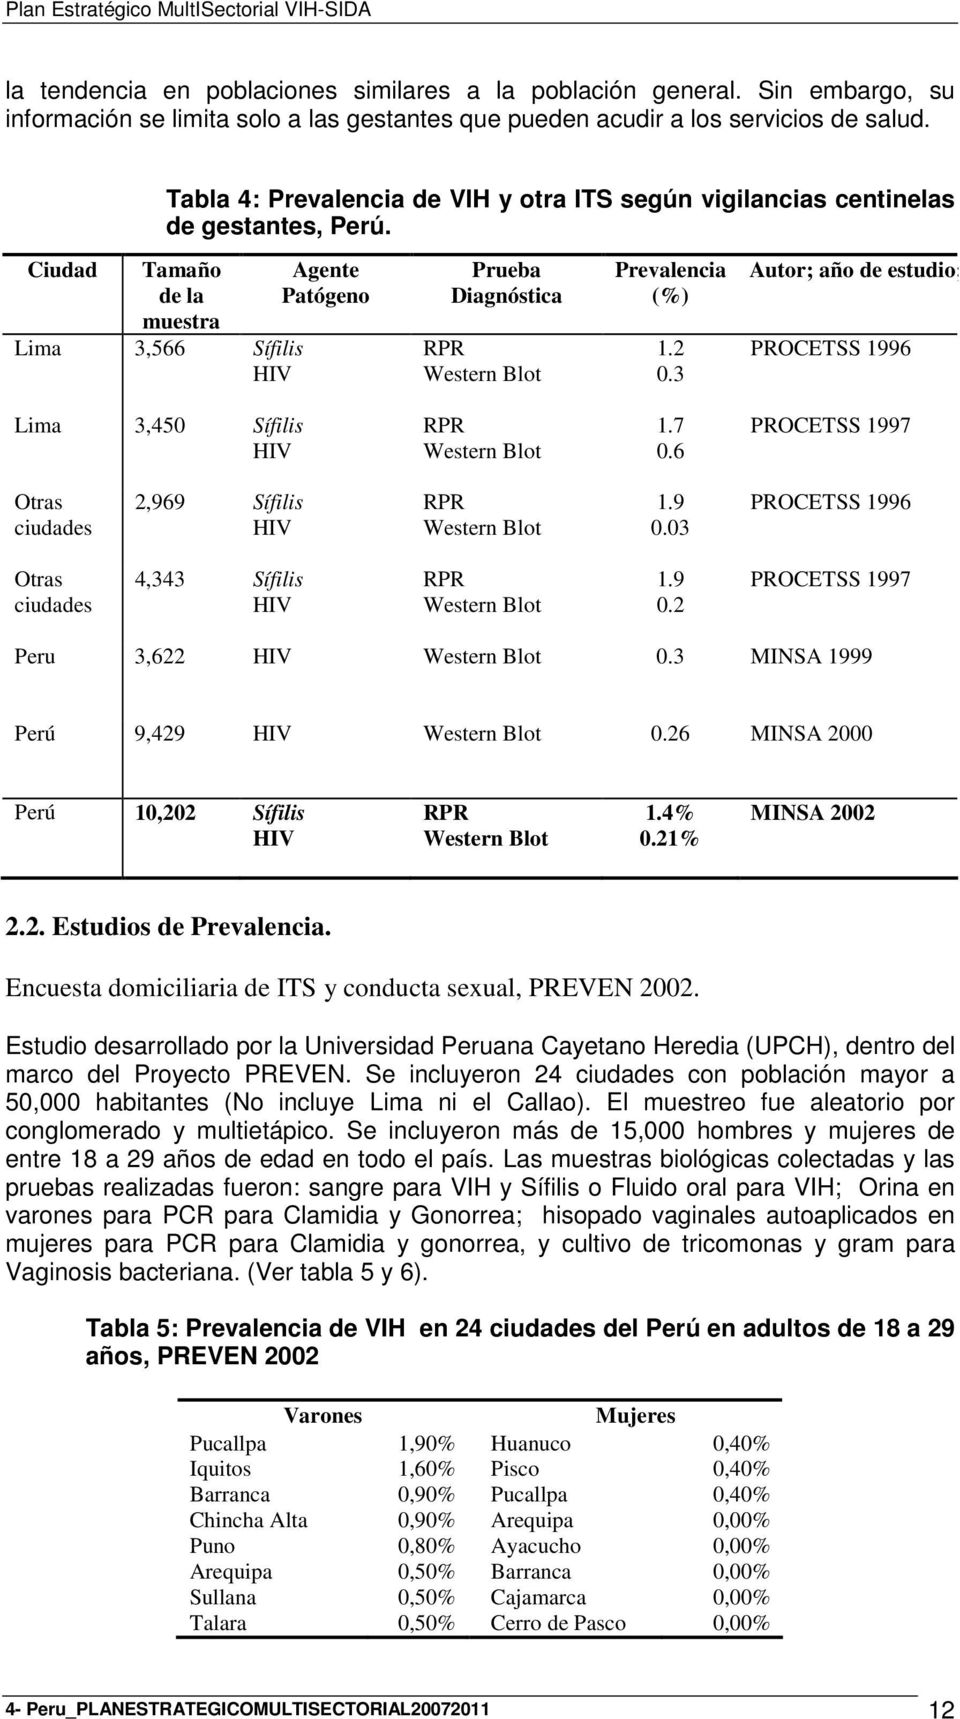 Ciudad Tamaño de la muestra Lima 3,566 Sífilis HIV Agente Patógeno Prueba Diagnóstica RPR Western Blot Prevalencia (%) 1.2 0.